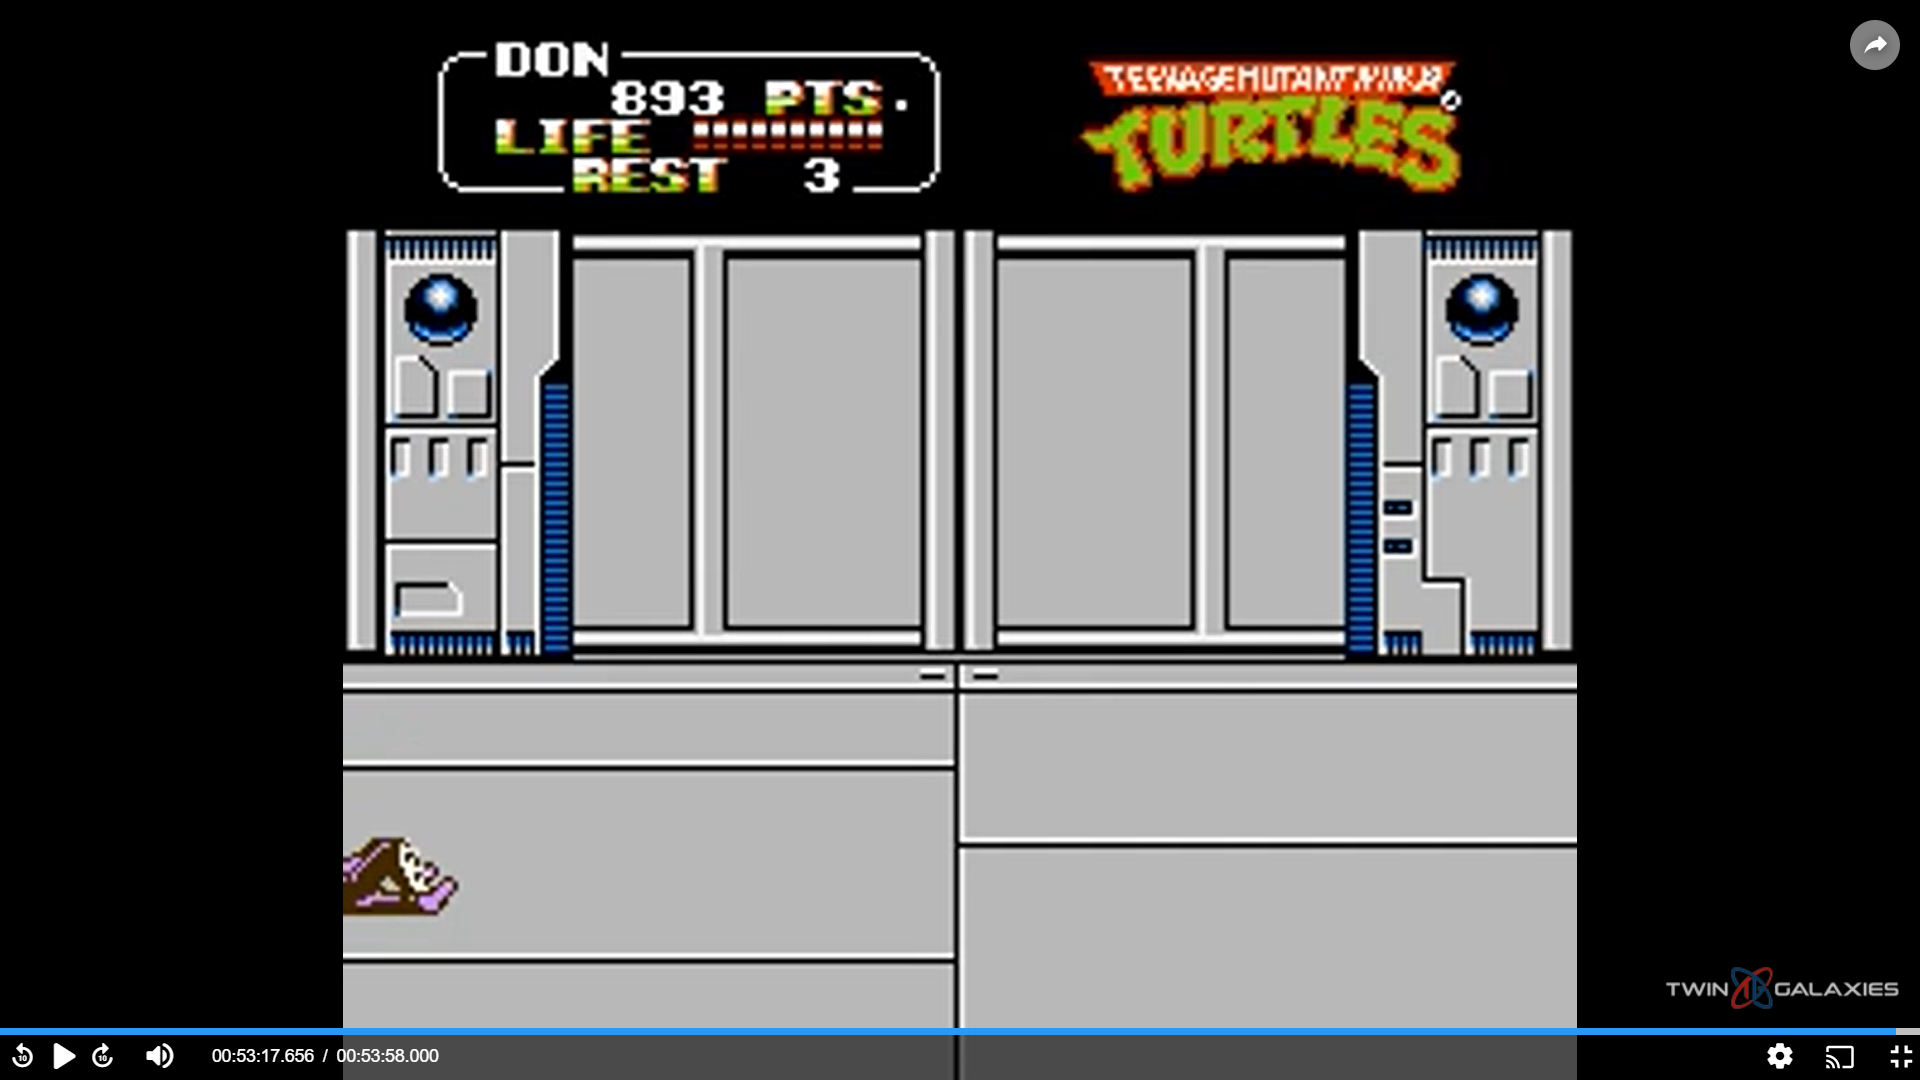 Teenage Mutant Ninja Turtles II: The Arcade Game [10 Lives Start] 893 points